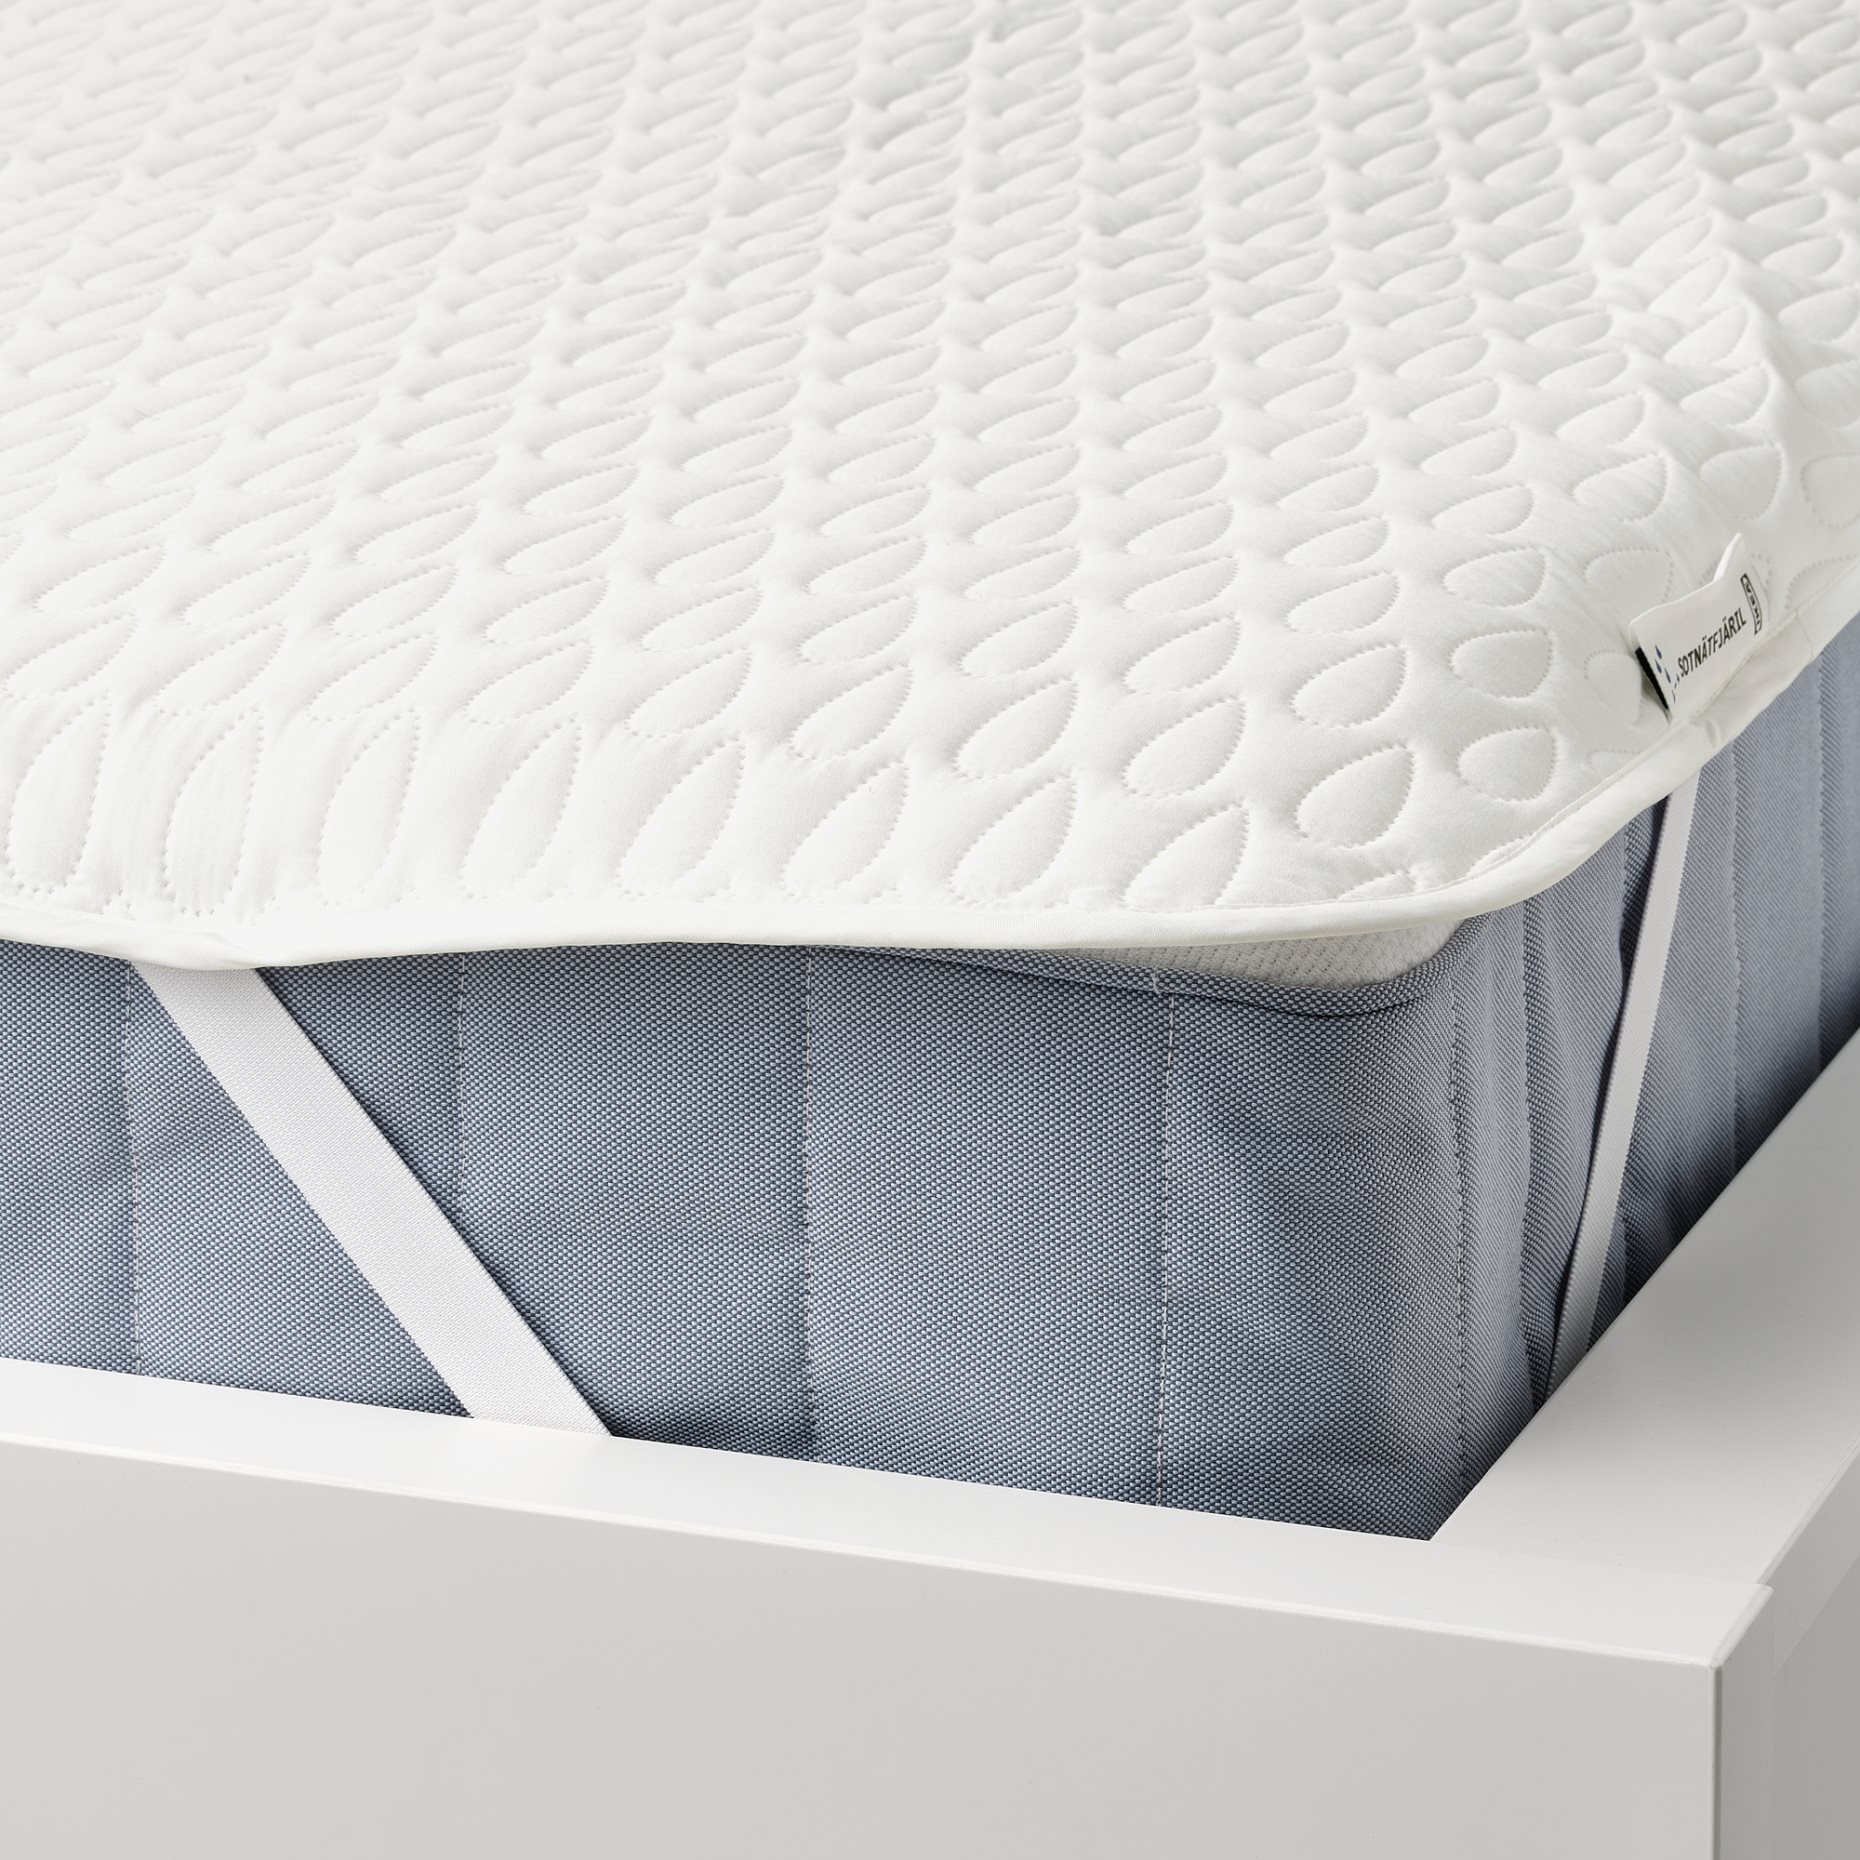 SOTNÄTFJÄRIL, waterproof mattress protector, 160x200 cm, 905.312.88